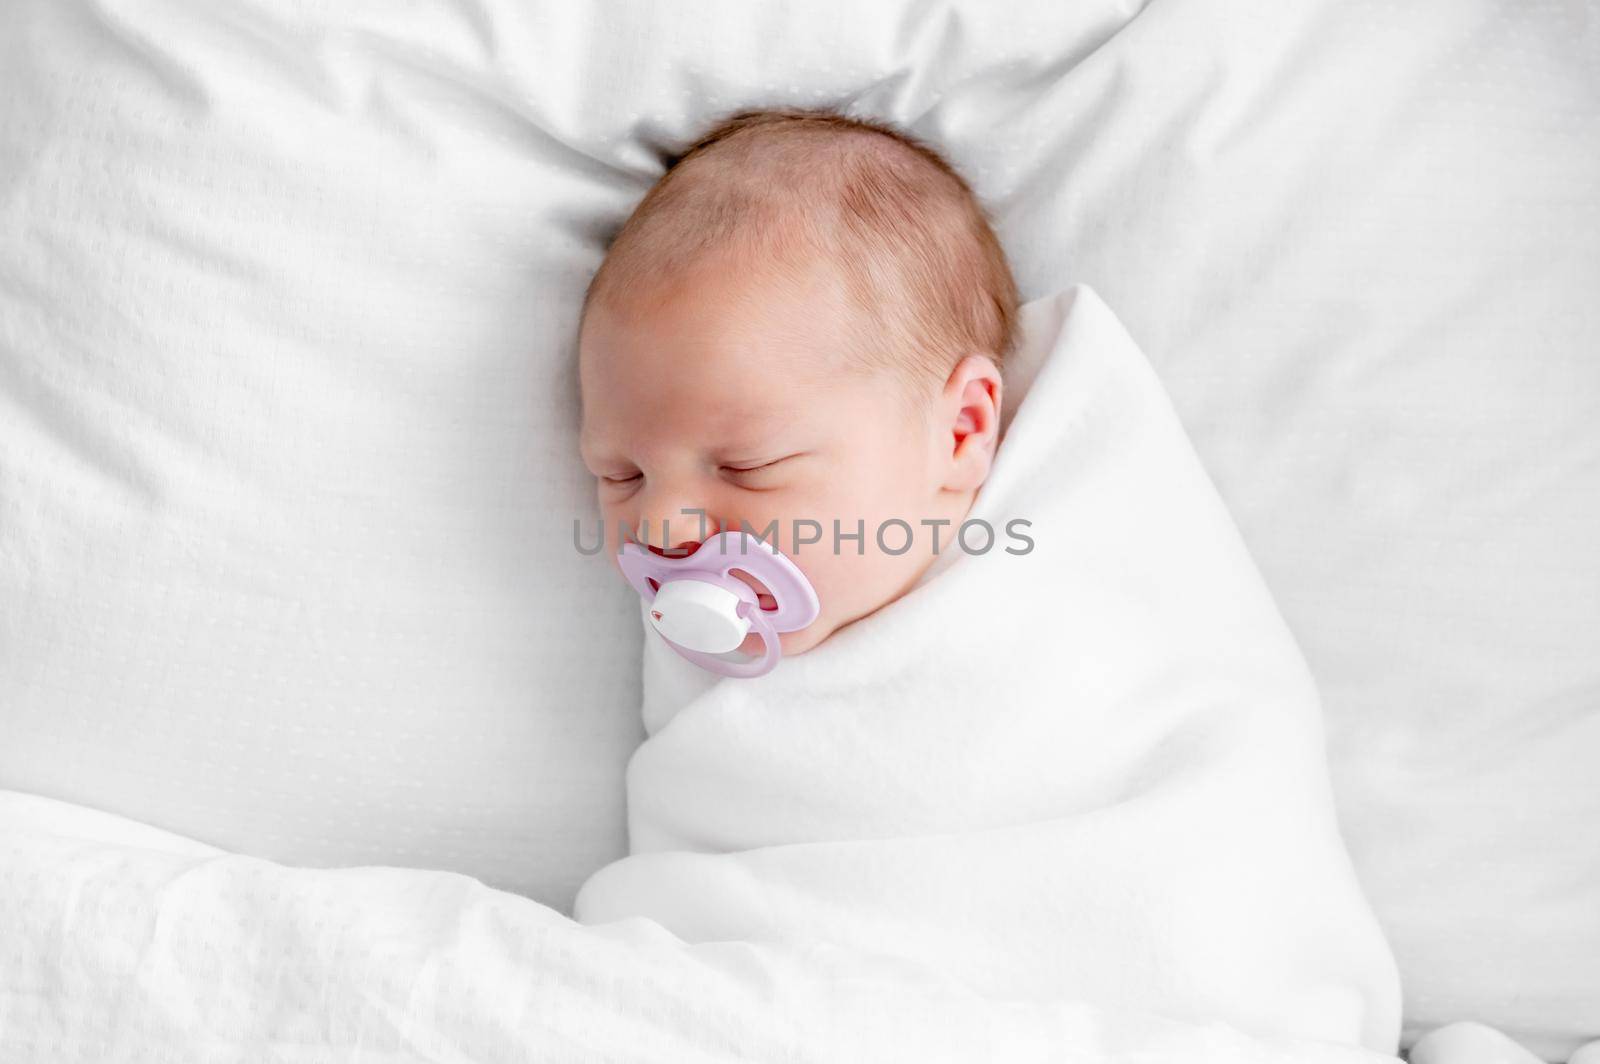 Newborn baby at home by tan4ikk1